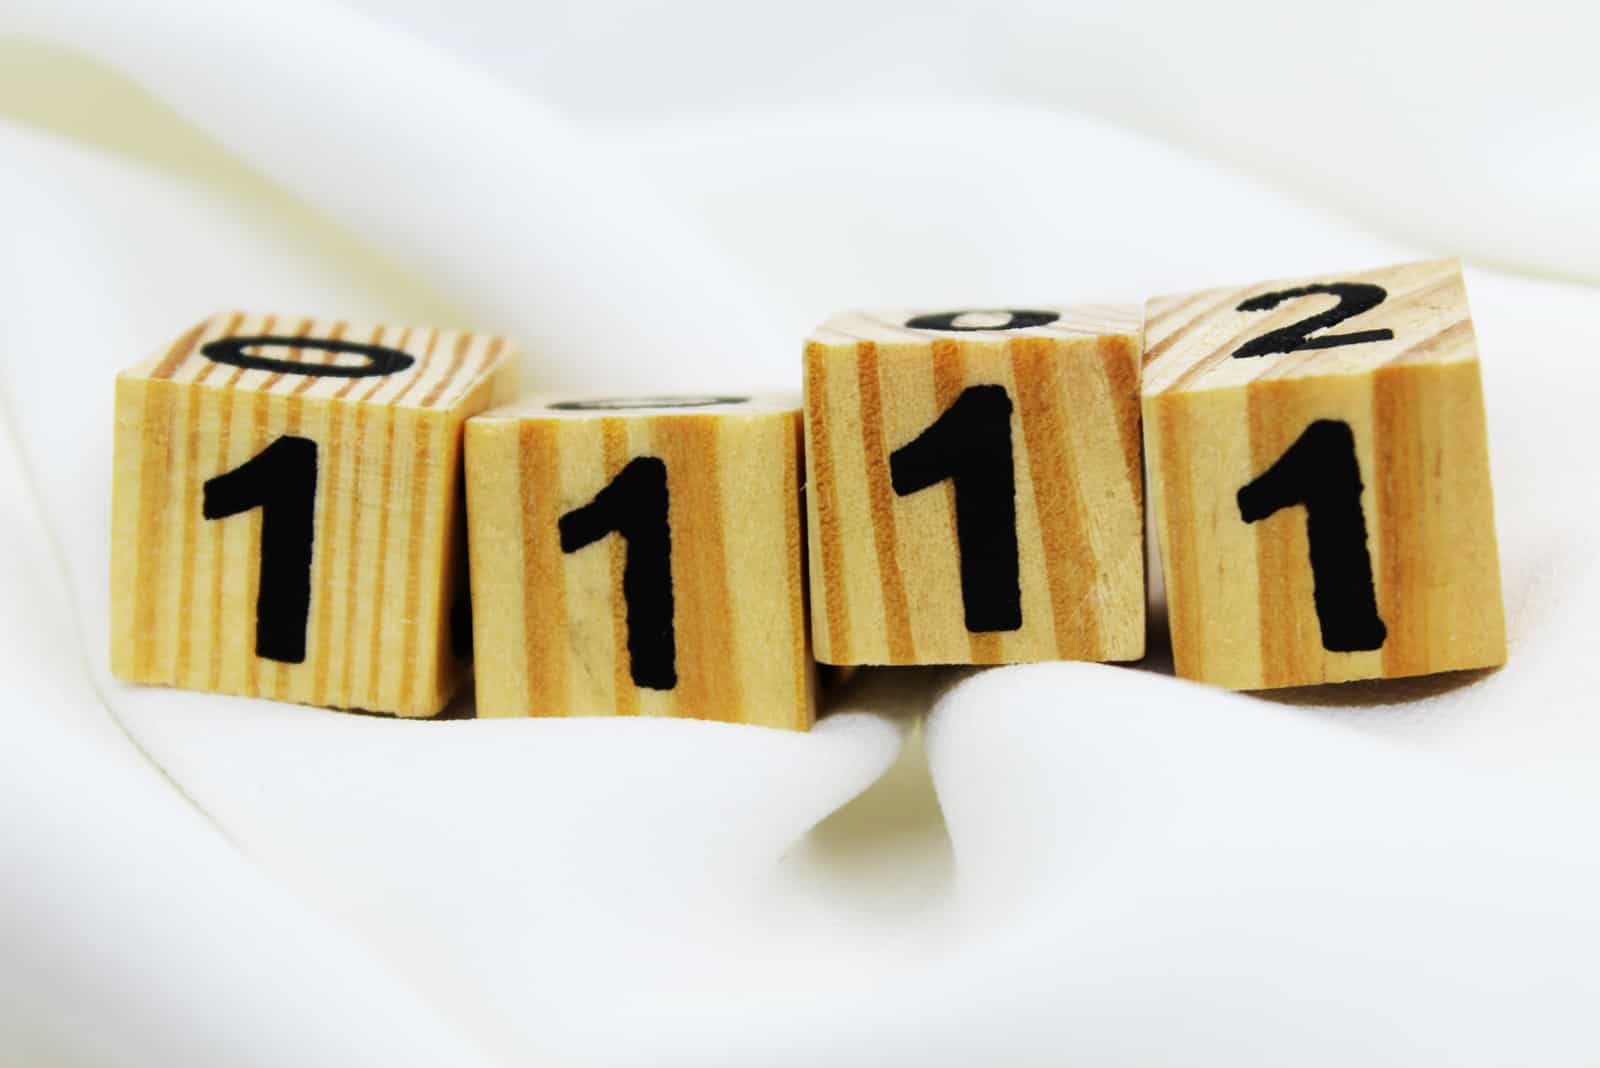 1111 – Bedeutung und Geheimnis dieser Engelszahl!